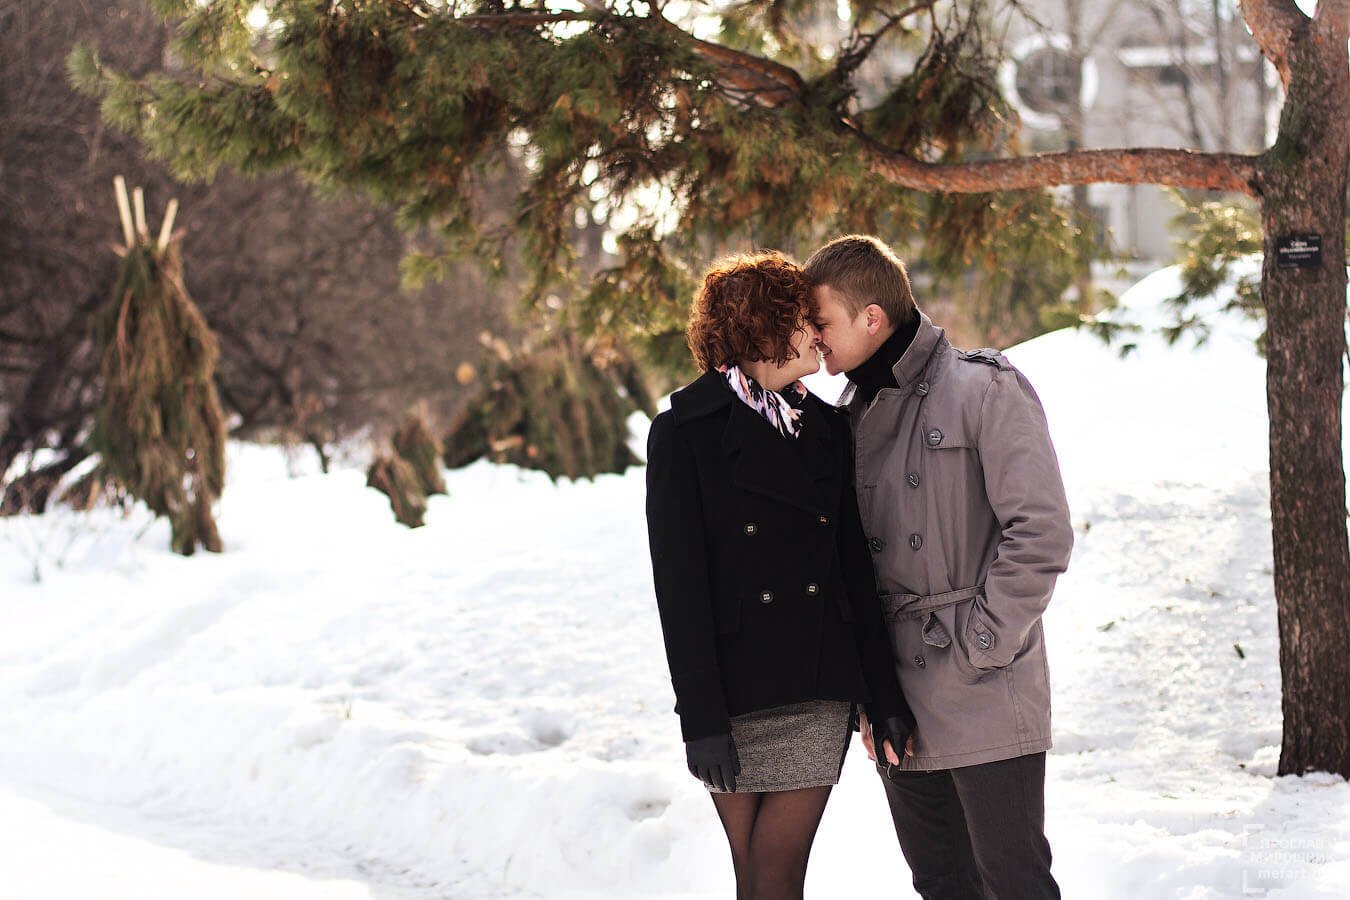 Соседская пара. Парень зимой. Свидание зимой. Влюбленные в зимнем лесу. Фотосессия пары зимой.